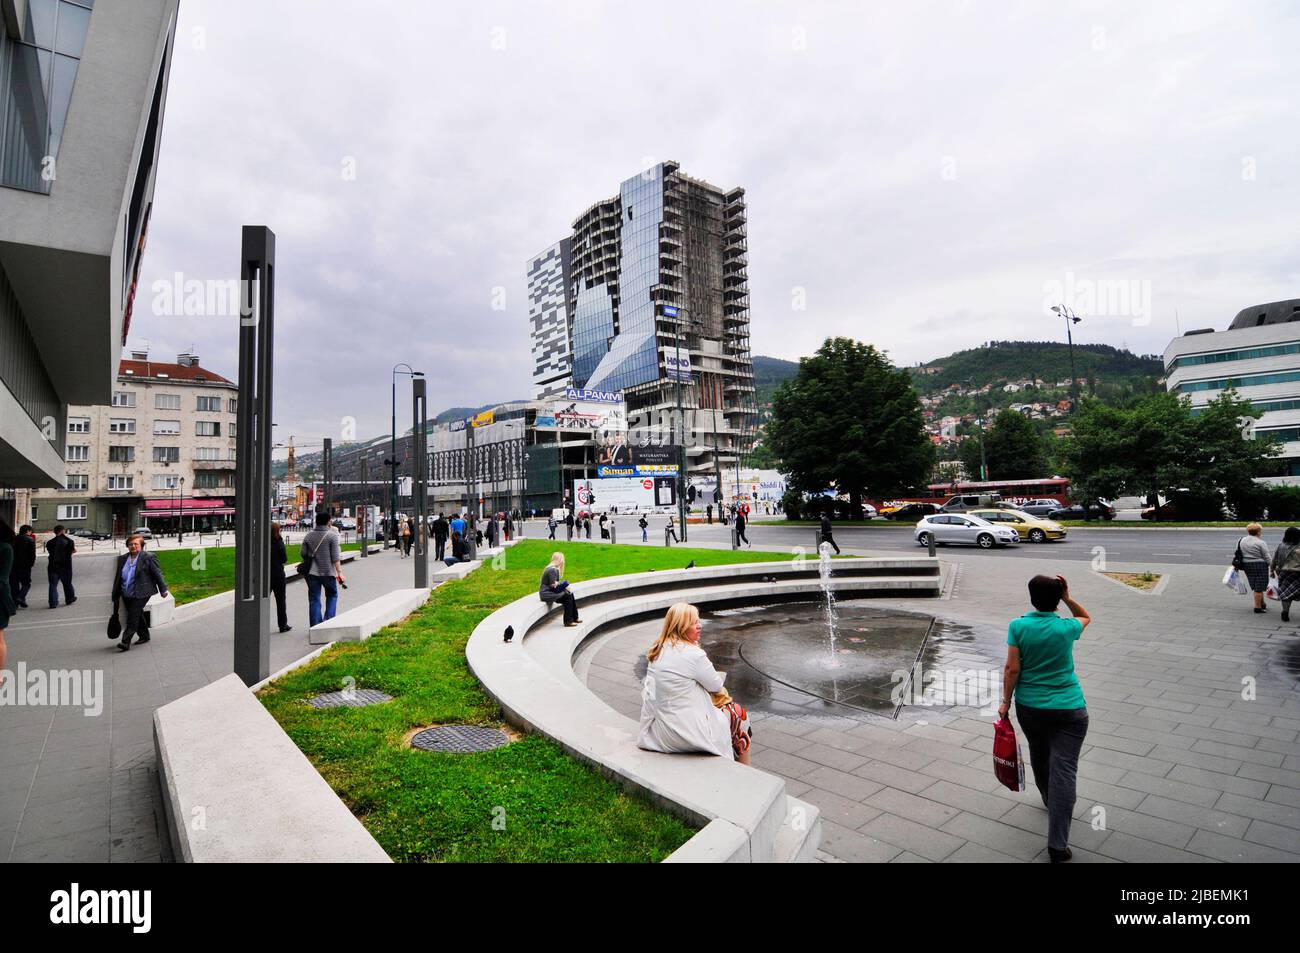 Das Einkaufszentrum SCC - Sarajevo City Center wird gerade gebaut. Sarajevo, Bosnien Und Herzegowina. Stockfoto